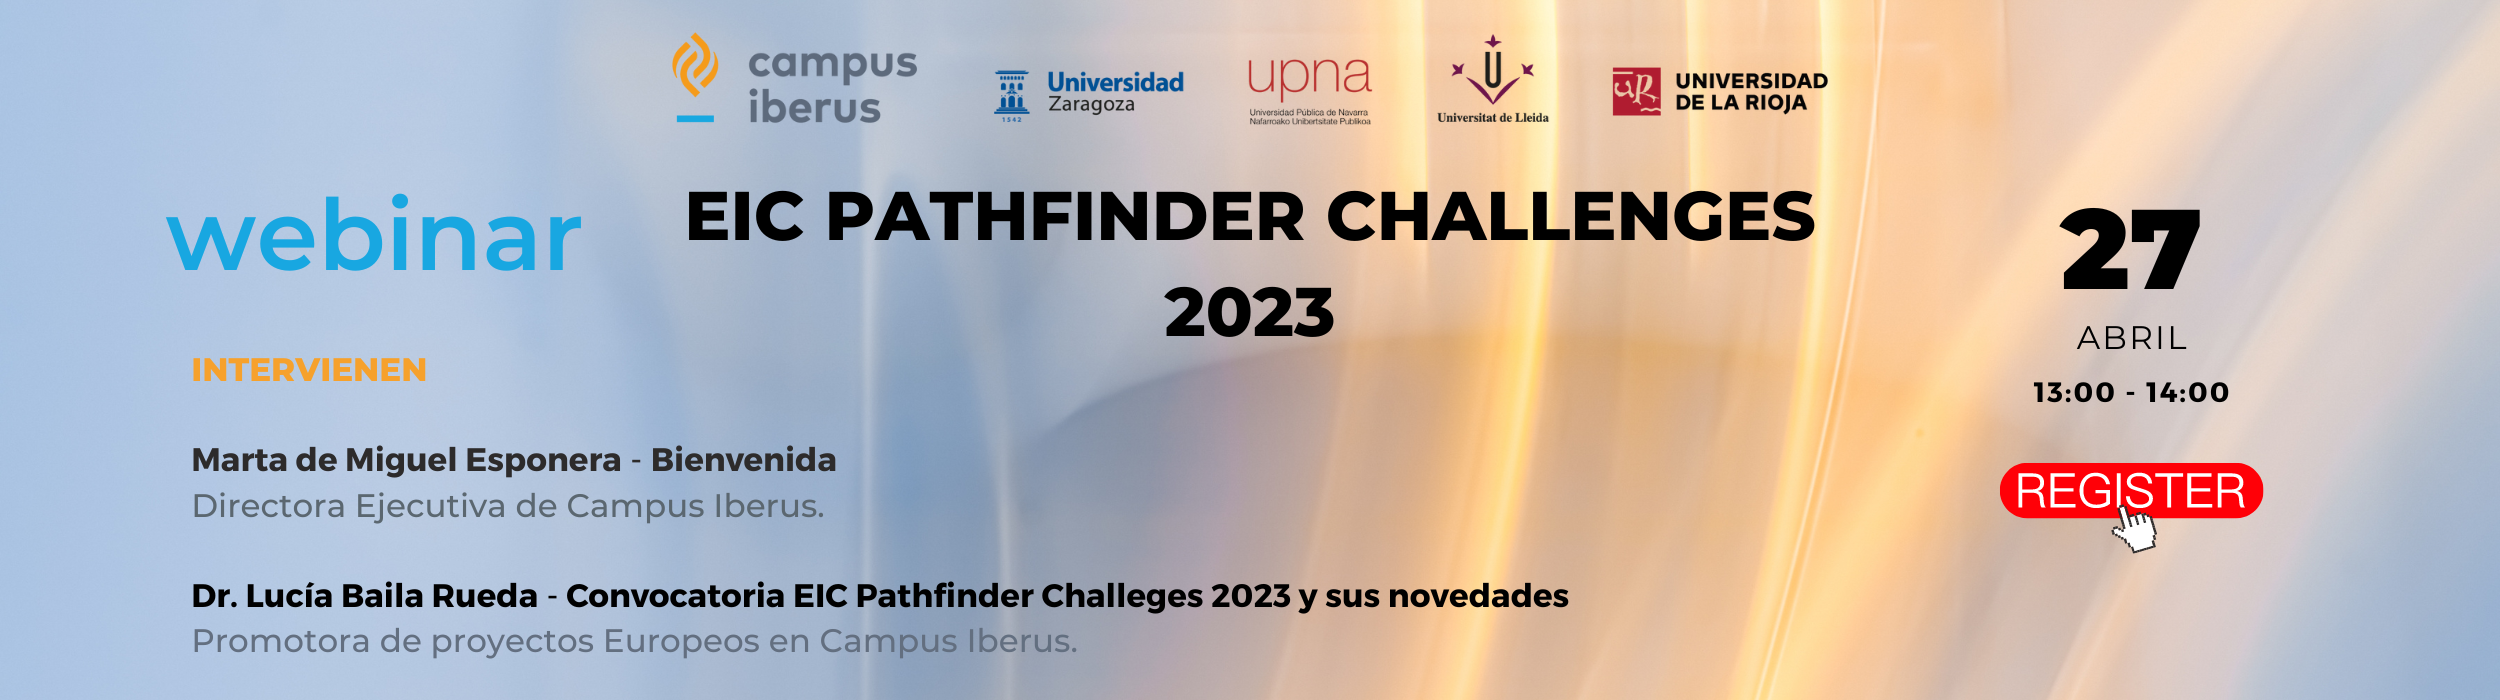 EIC PATHFINDER Challenges 2023 Banner